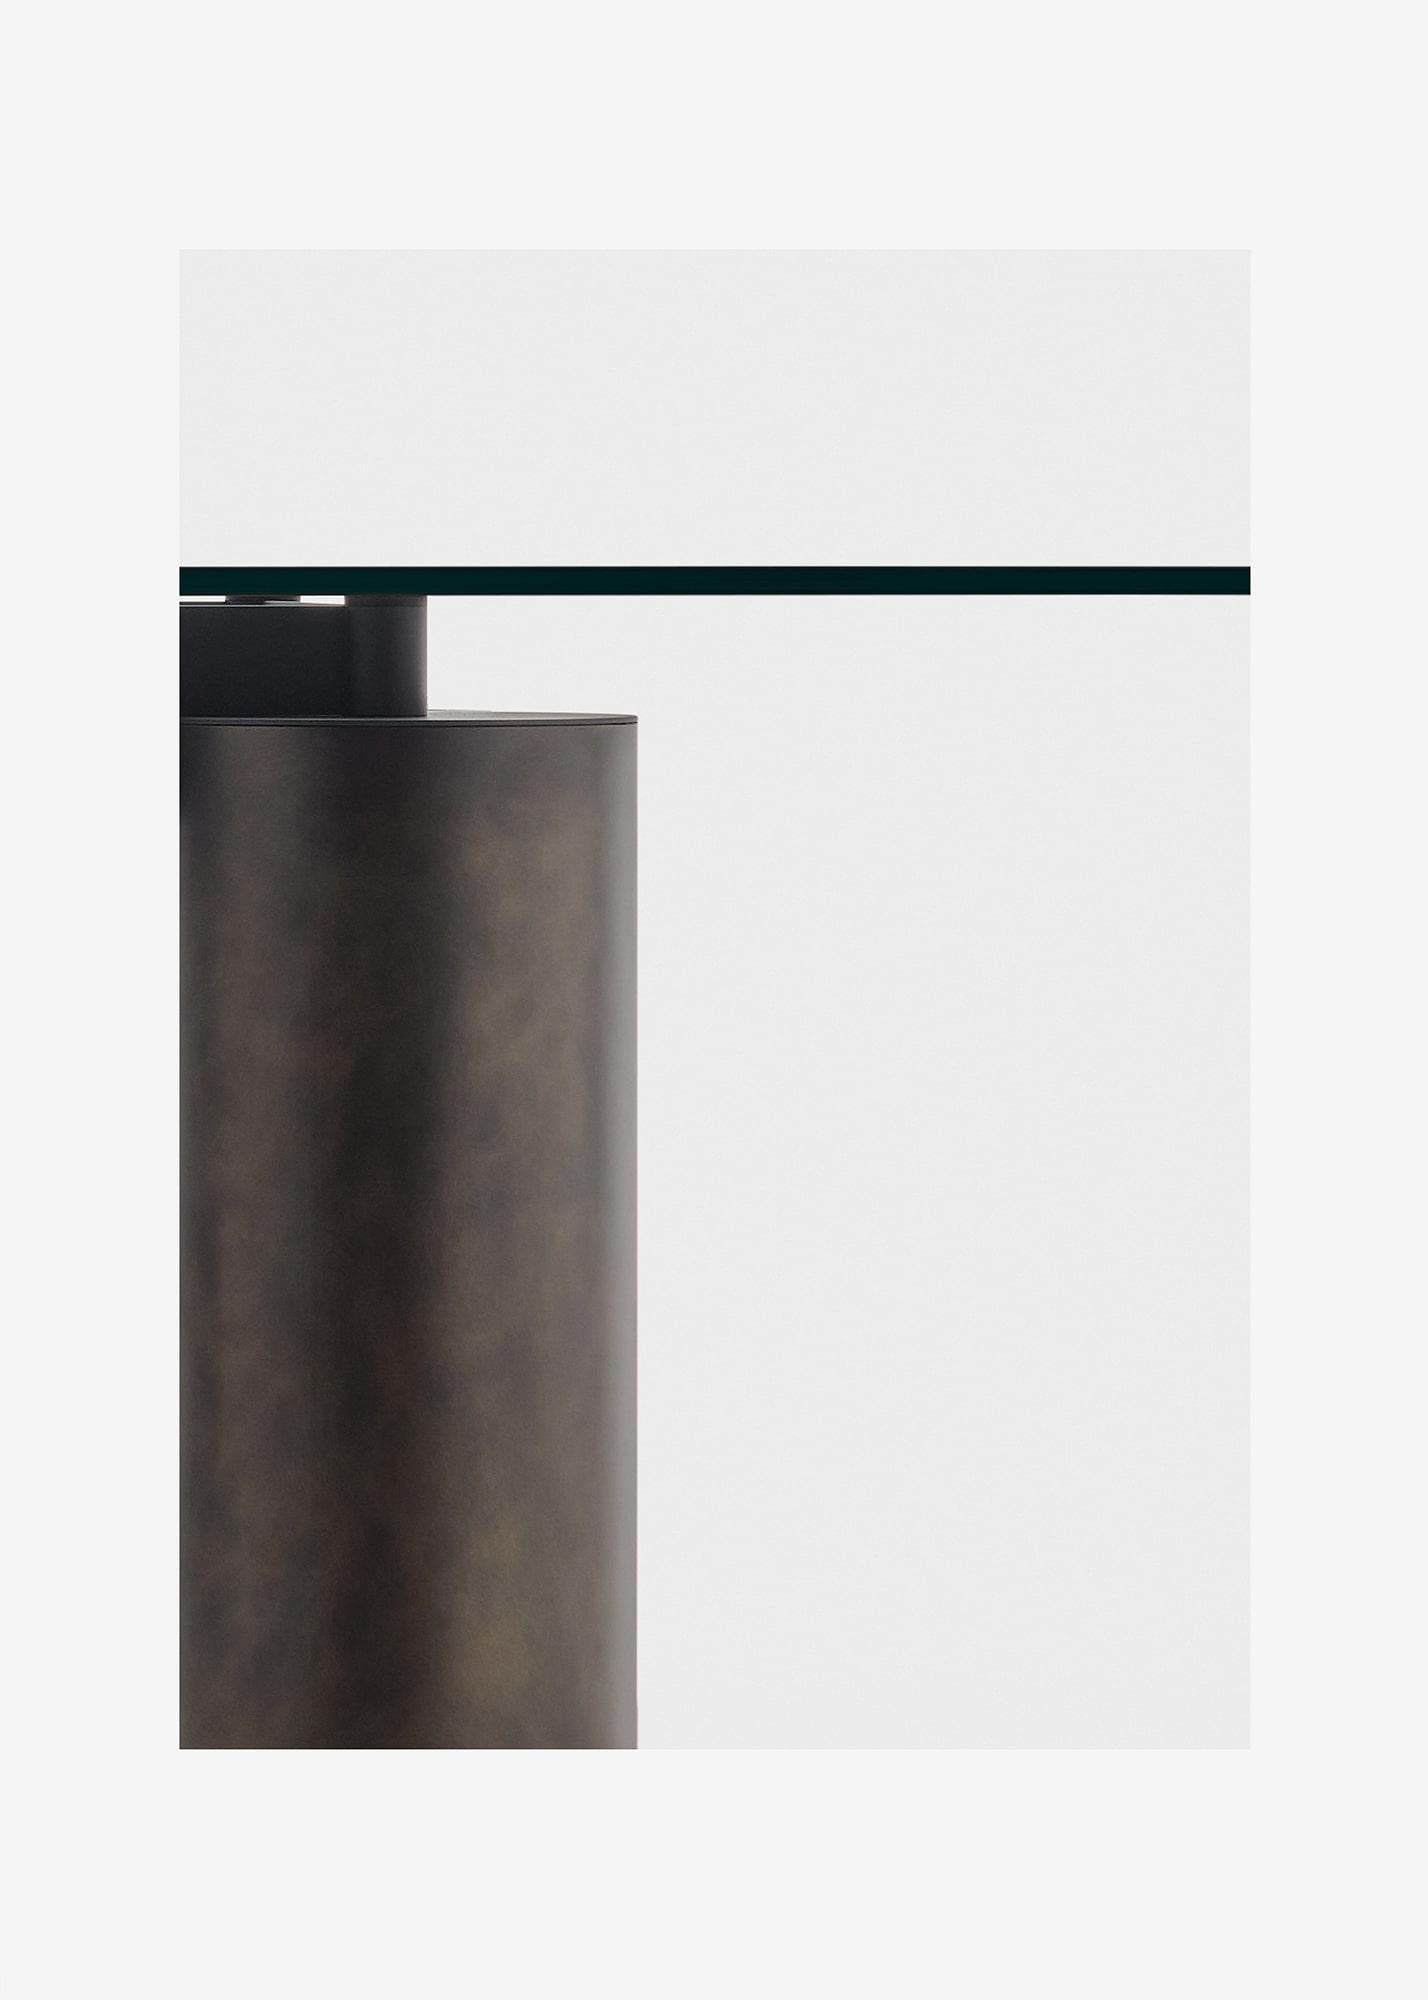 Système de tables avec plateaux en verre soutenus par des colonnes imposantes en finition Fresco, un matériau précieux composé de béton avec des résines spéciales et des pigments. Diamètre dans différents matériaux fins : Fresco finish (pâte de